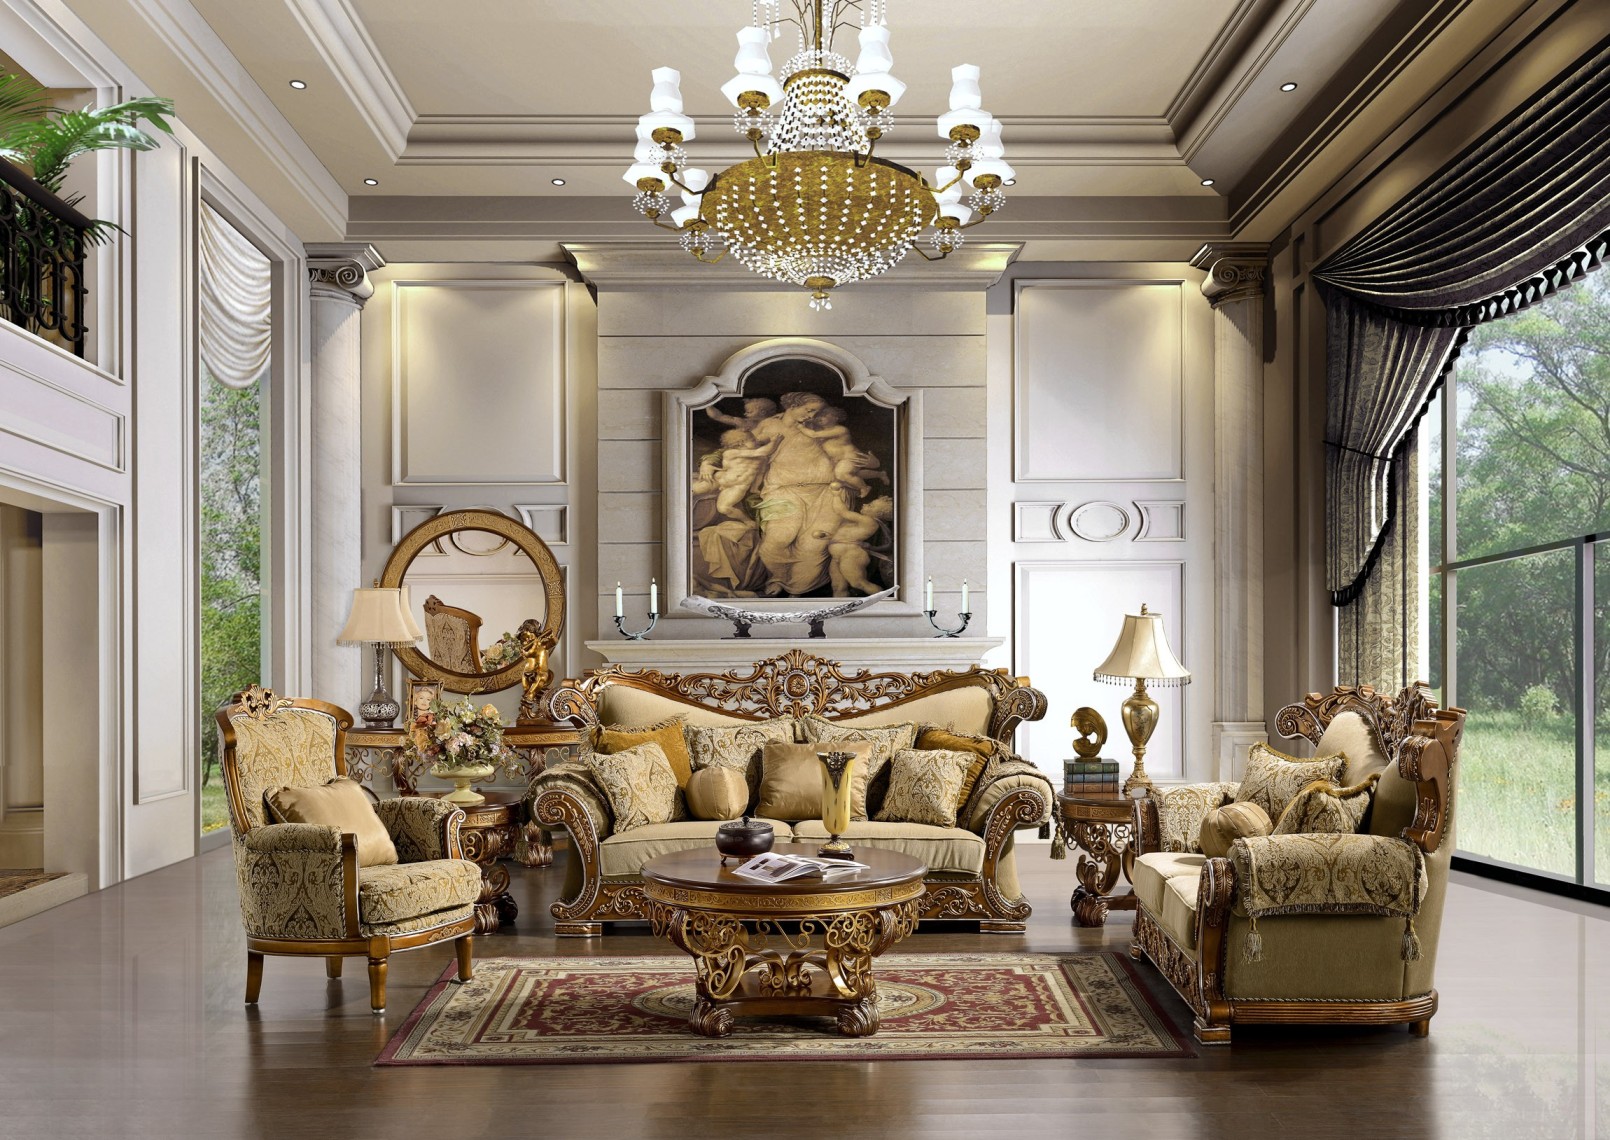 Elegant And Formal Living Room Interior Design